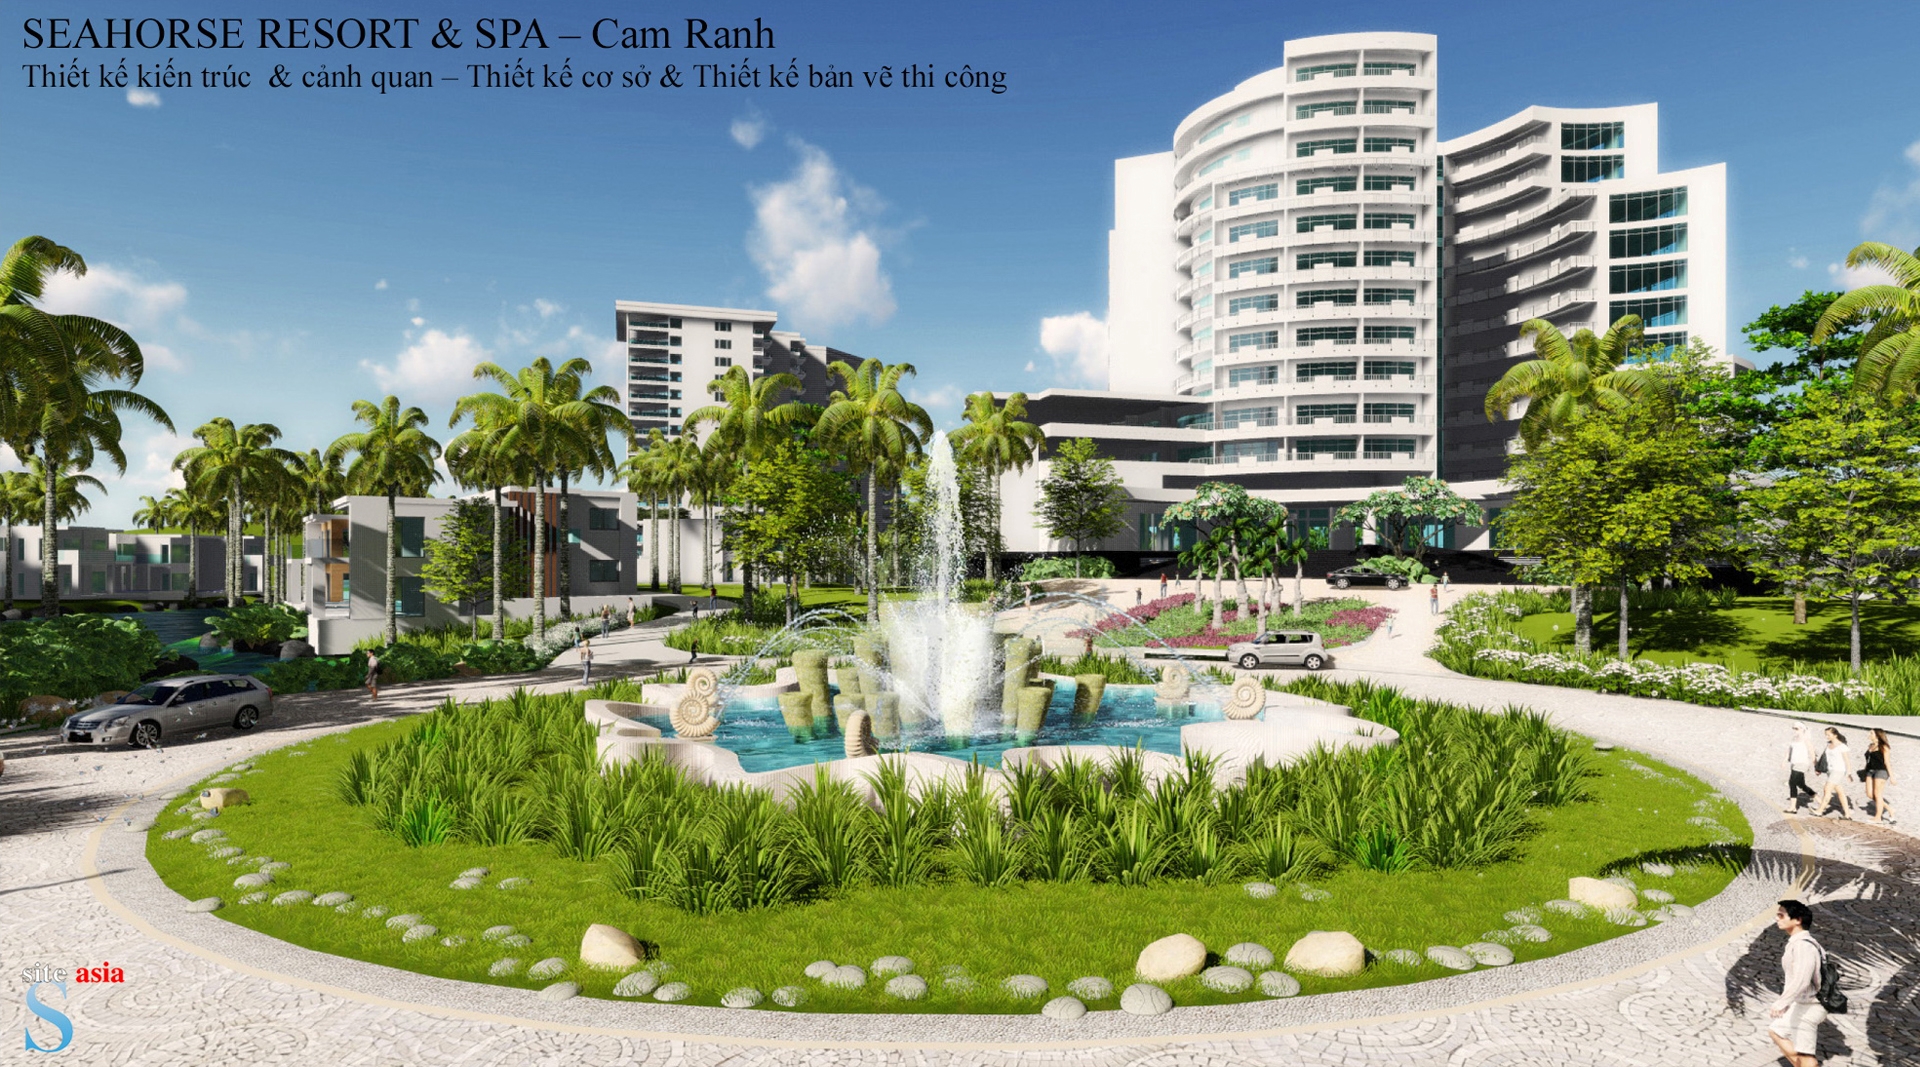 Seahorse Resort & Spa – Cam Ranh